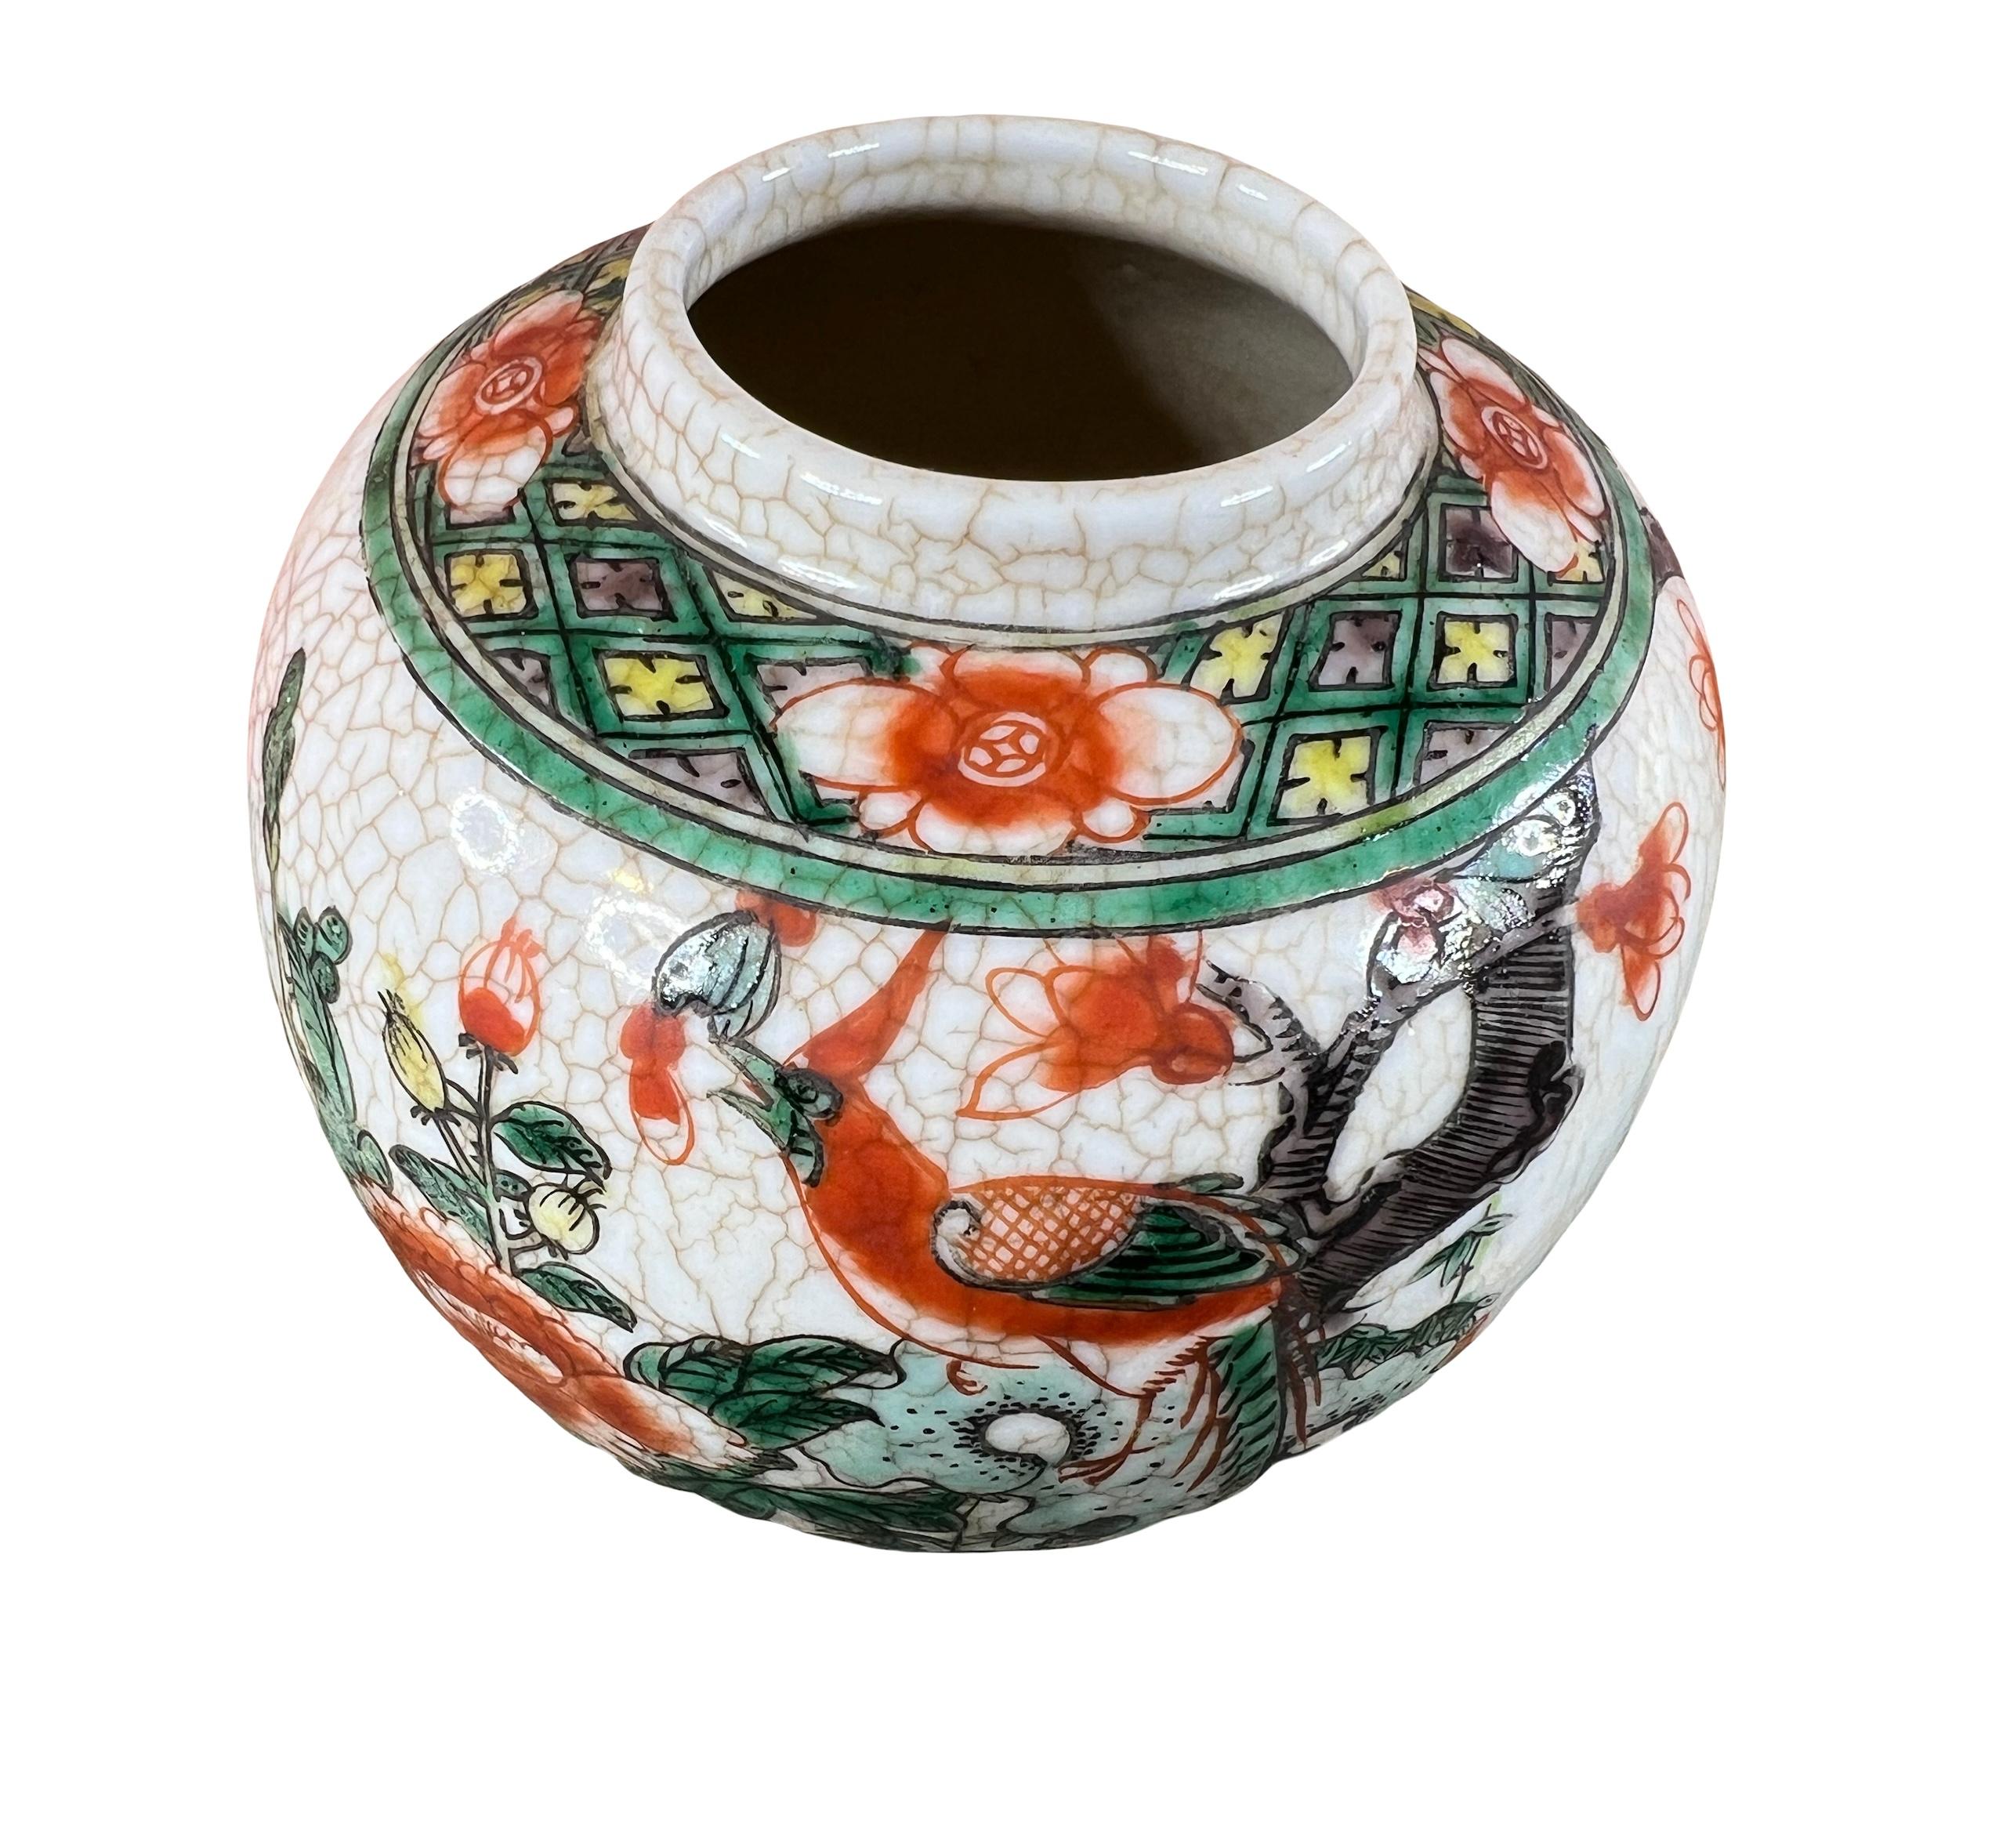 Ce pot à gingembre chinois en céramique est une véritable œuvre d'art. Son élégant décor représentant un faisan et des branches fleuries ajoute un charme asiatique à votre espace. 

Datant de la fin du 19e ou du début du 20e siècle, il reflète